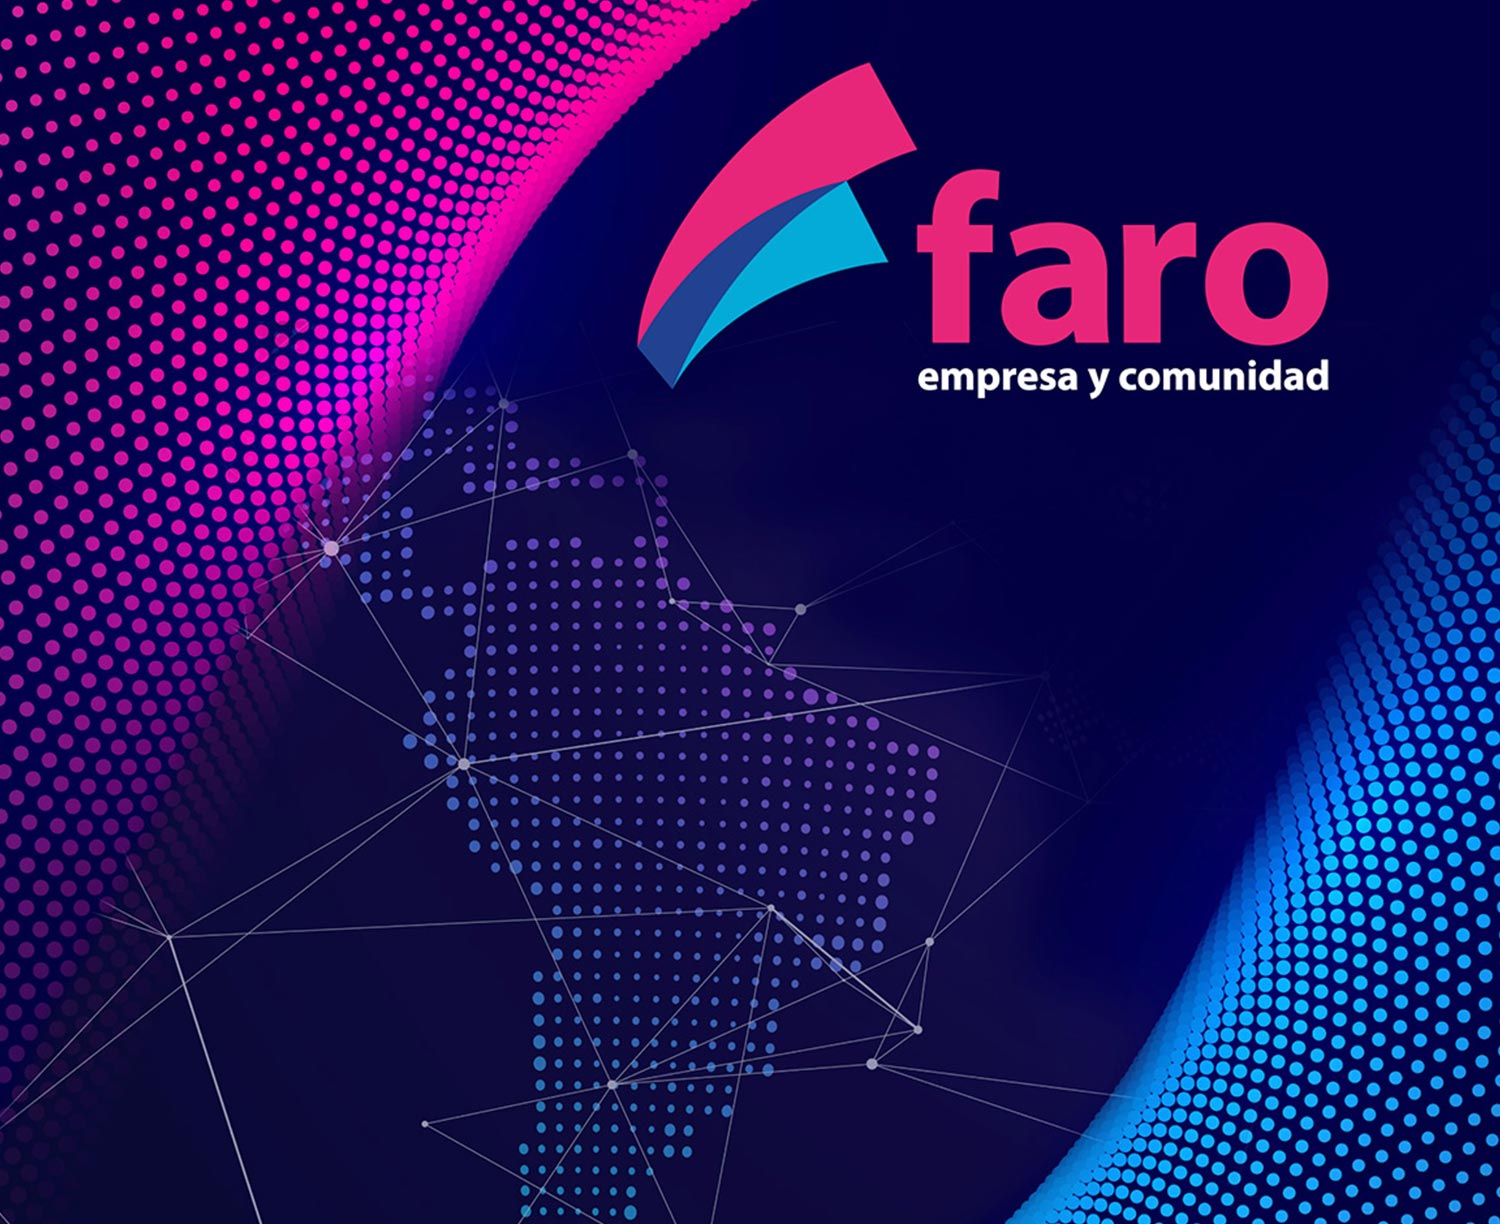 Capa de uma publicação dos resultados do Farol, uma ferramenta de autoavaliação. O texto diz farol, negócios e comunidade.